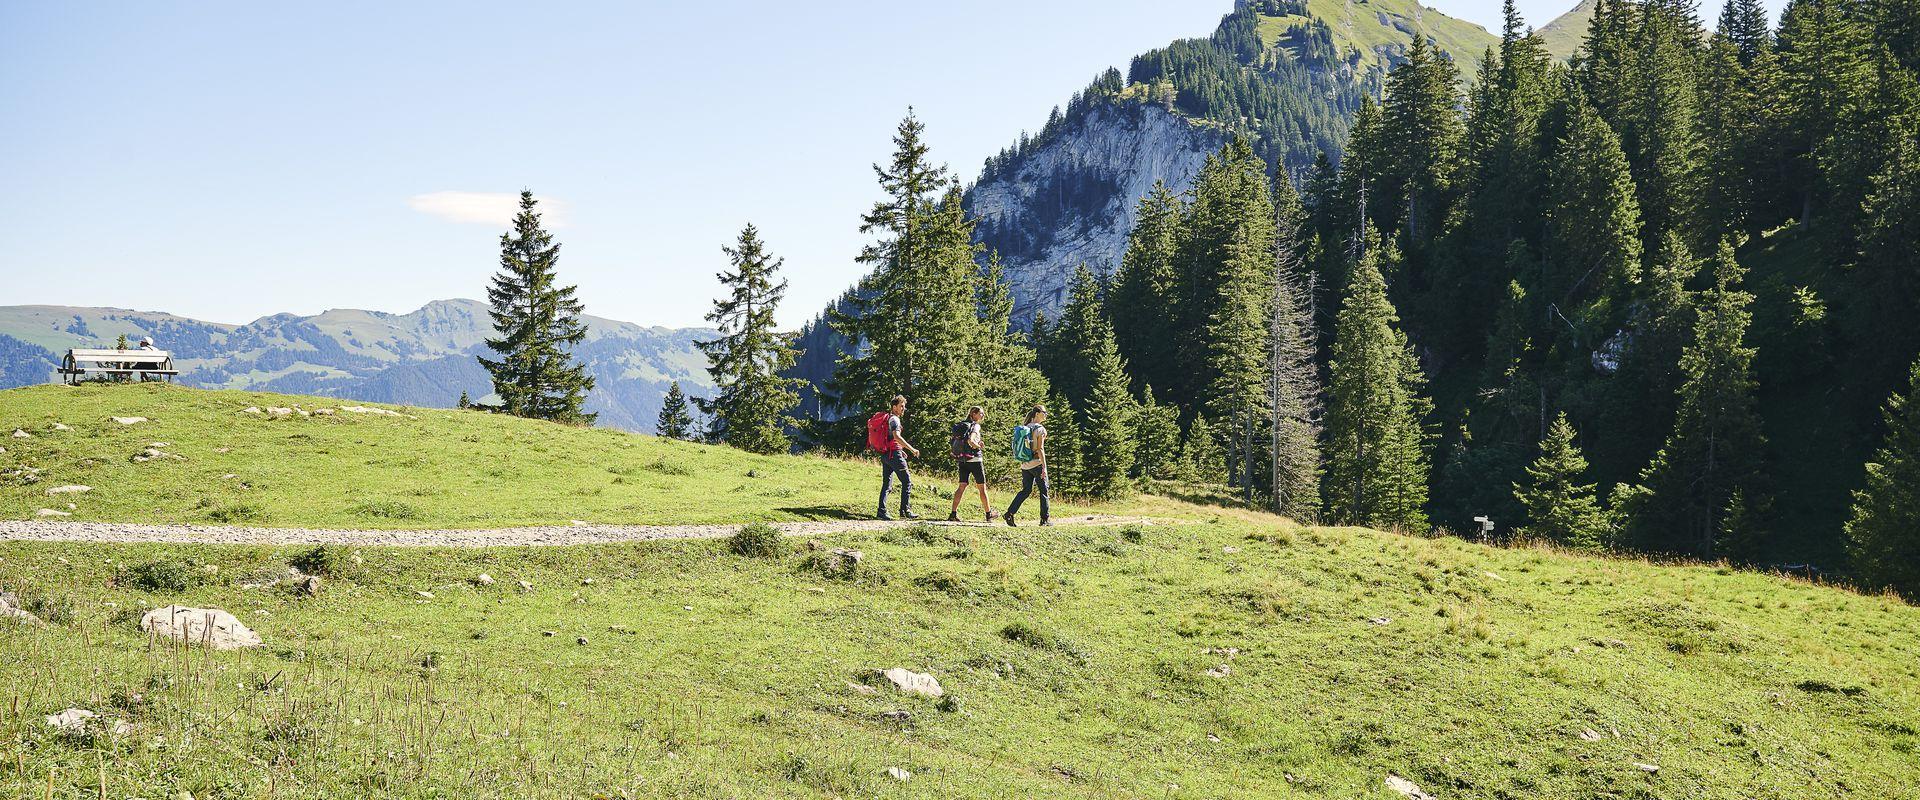 Wandern im Bregenzerwald mit Blick auf die Kanisfluh